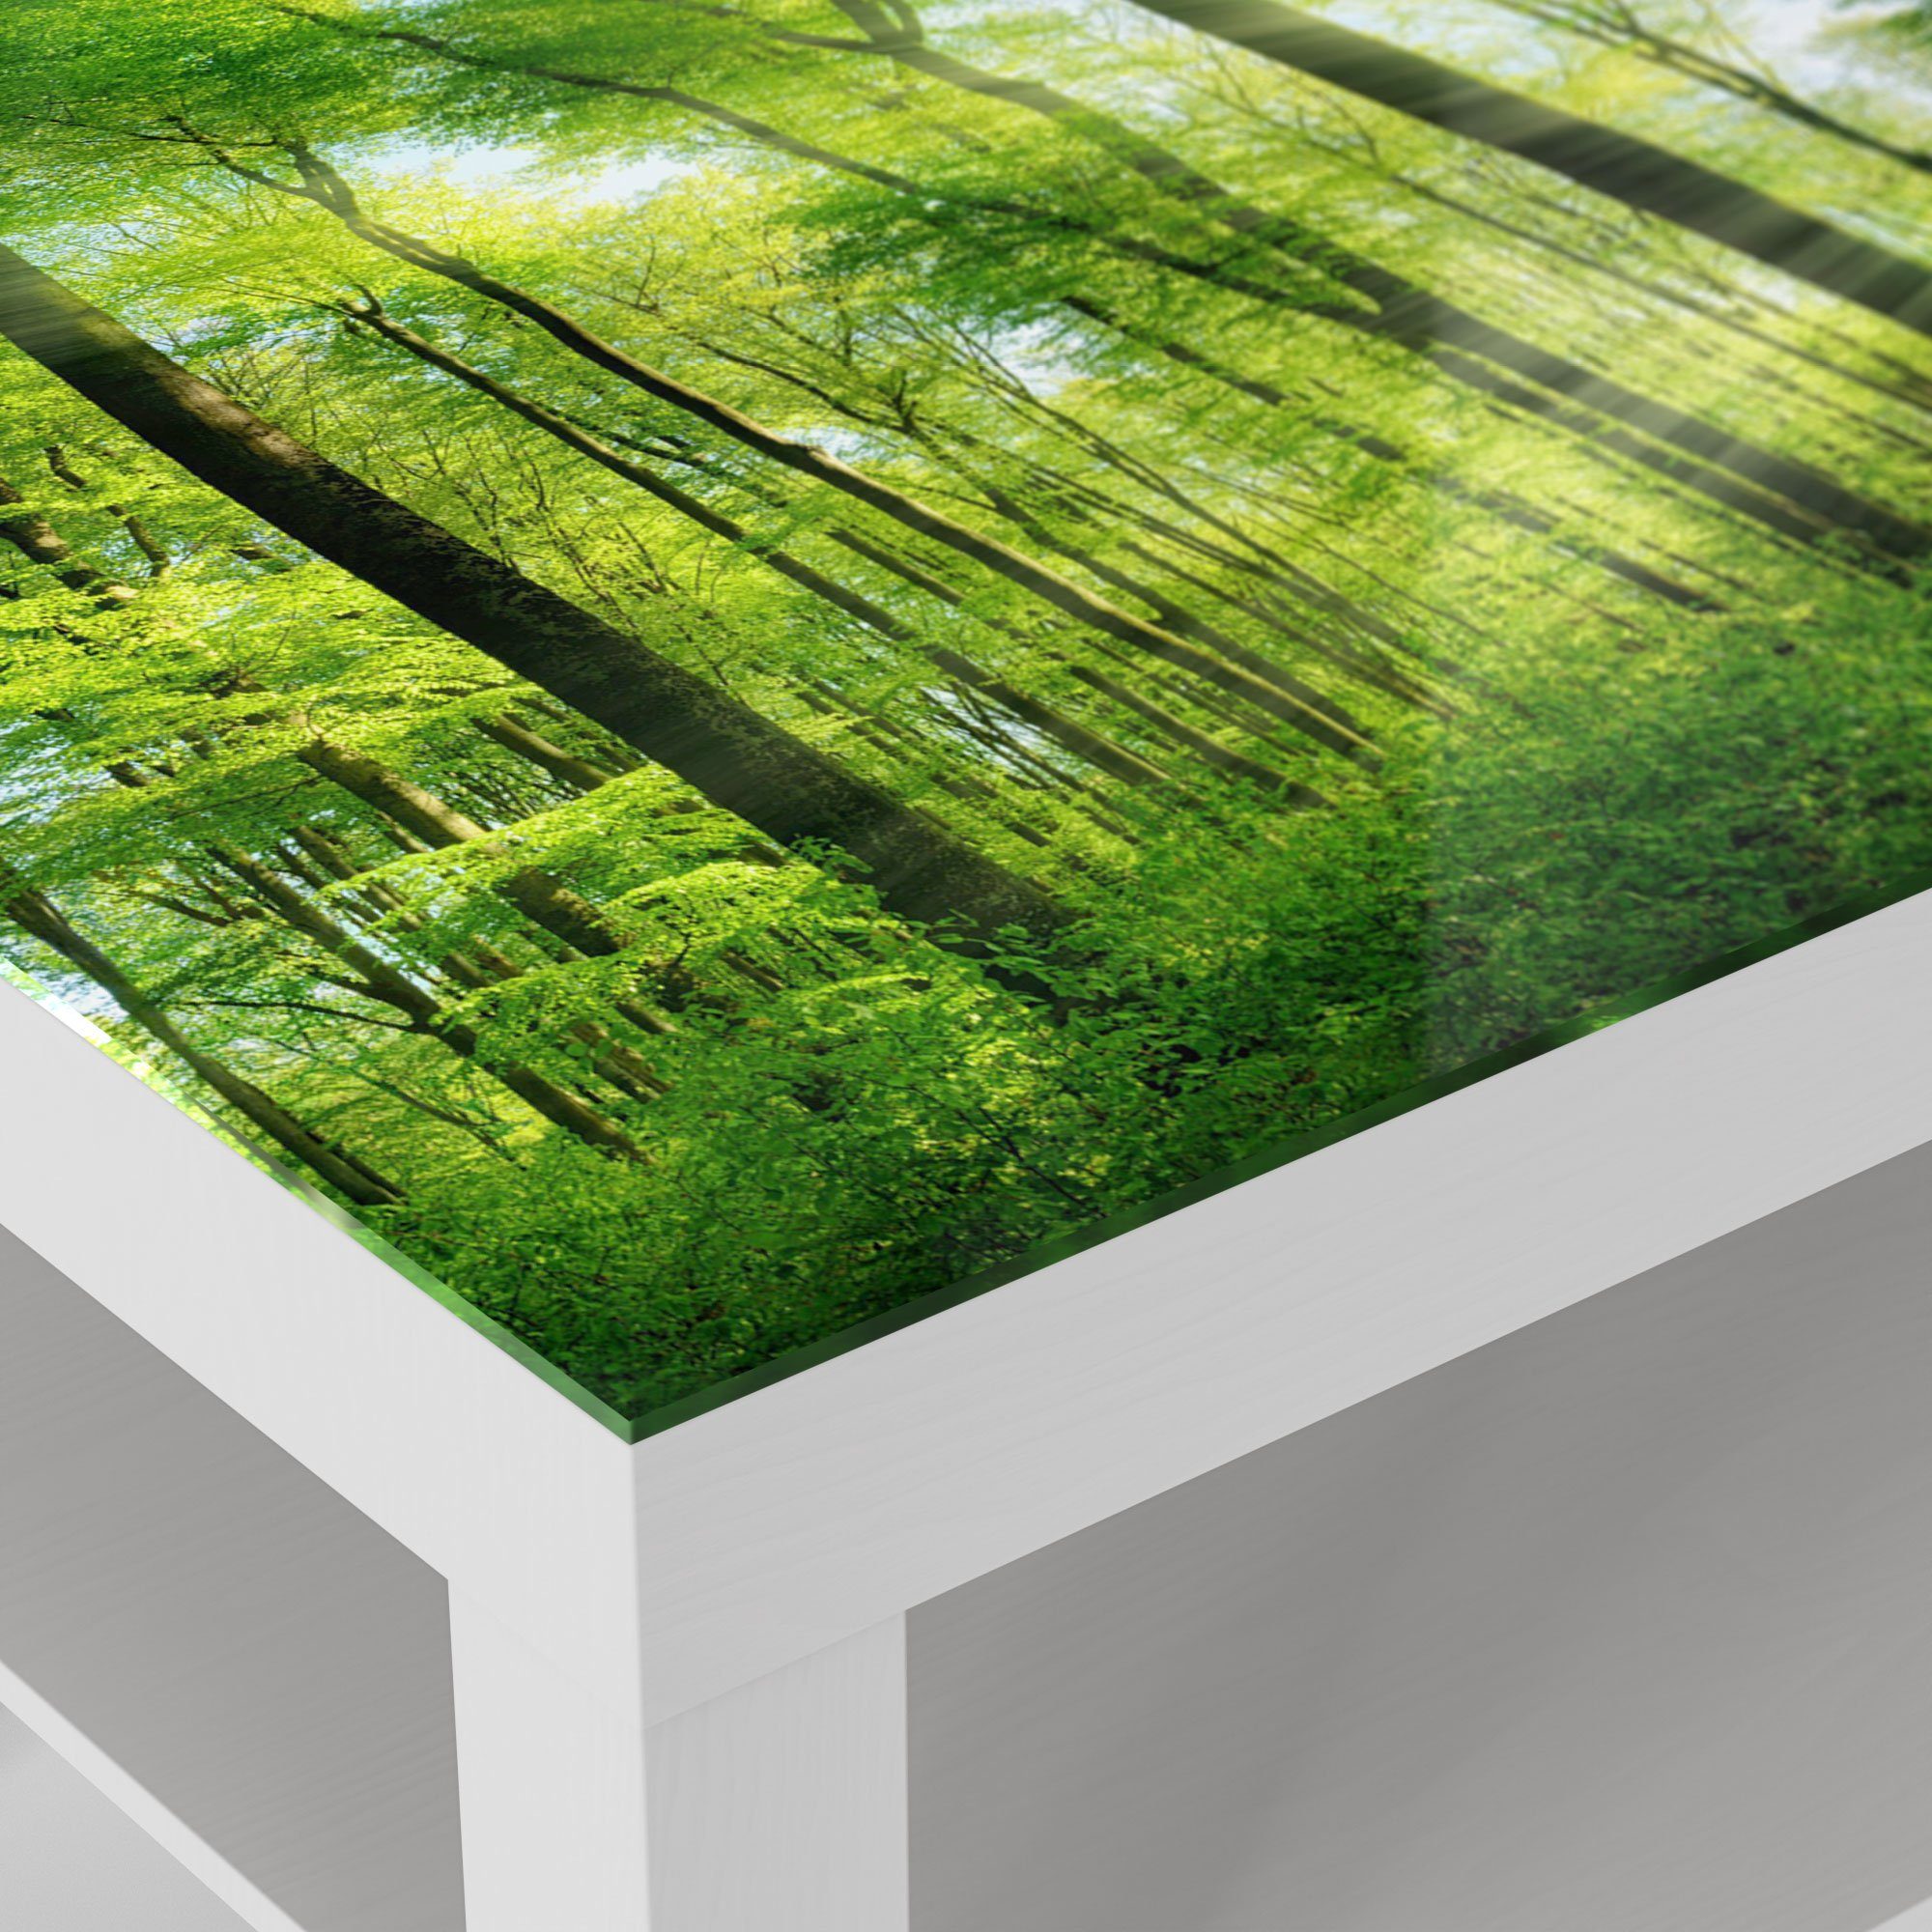 Couchtisch Beistelltisch Glas Glastisch Weiß modern Wald', DEQORI 'Sonne durchbricht